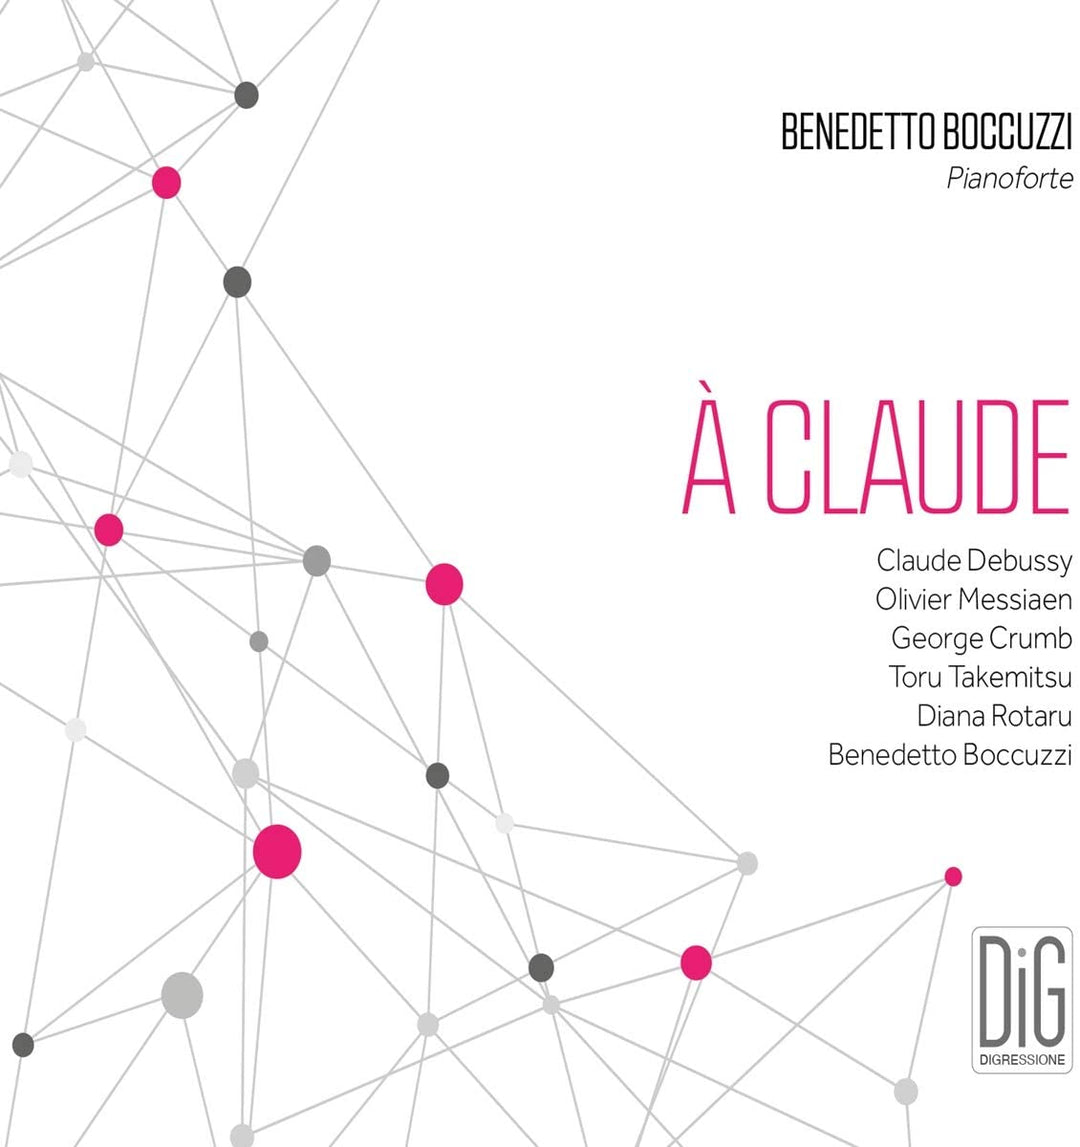 Benedetto Boccuzzi - A Claude [Benedetto Boccuzzi] [Digressione Music: DIGR111] [Audio CD]